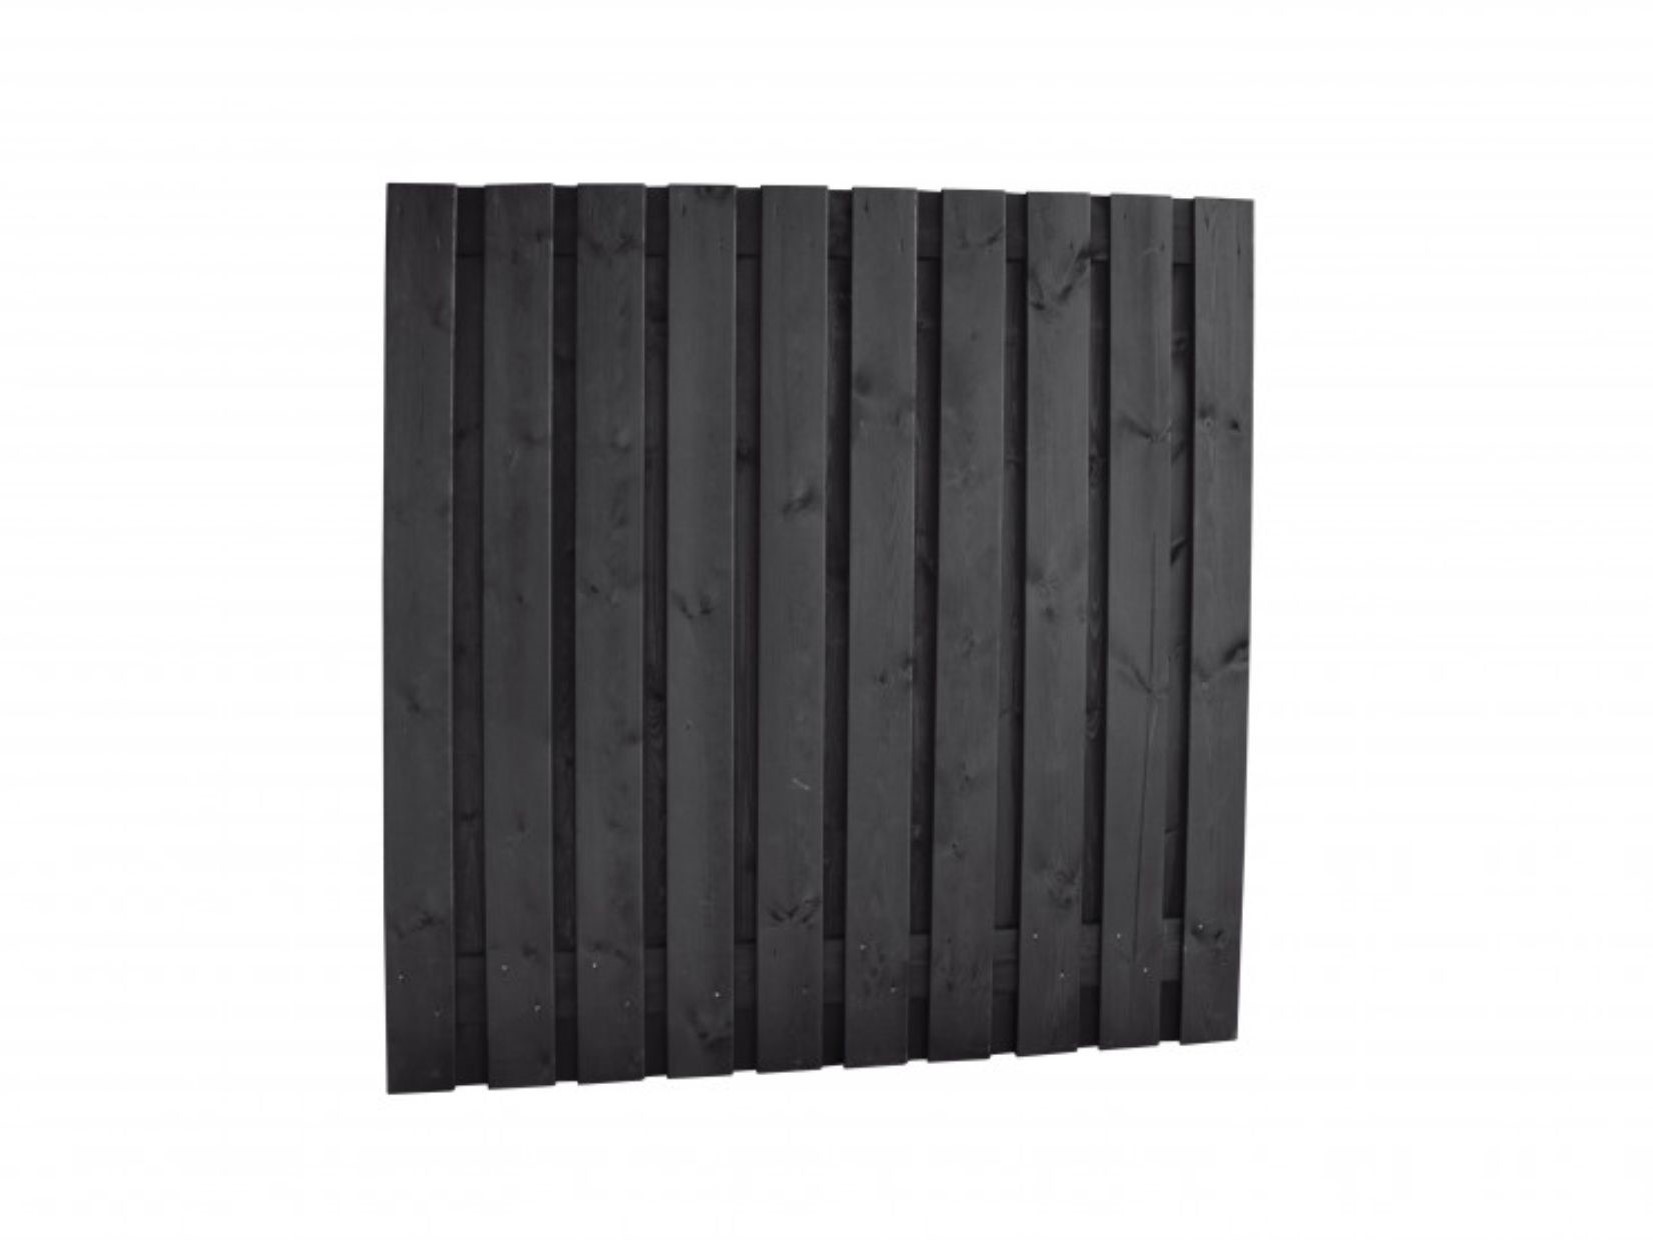 Schutting grenen geschaafd, 21-planks, 180 x 180 cm, zwart gespoten